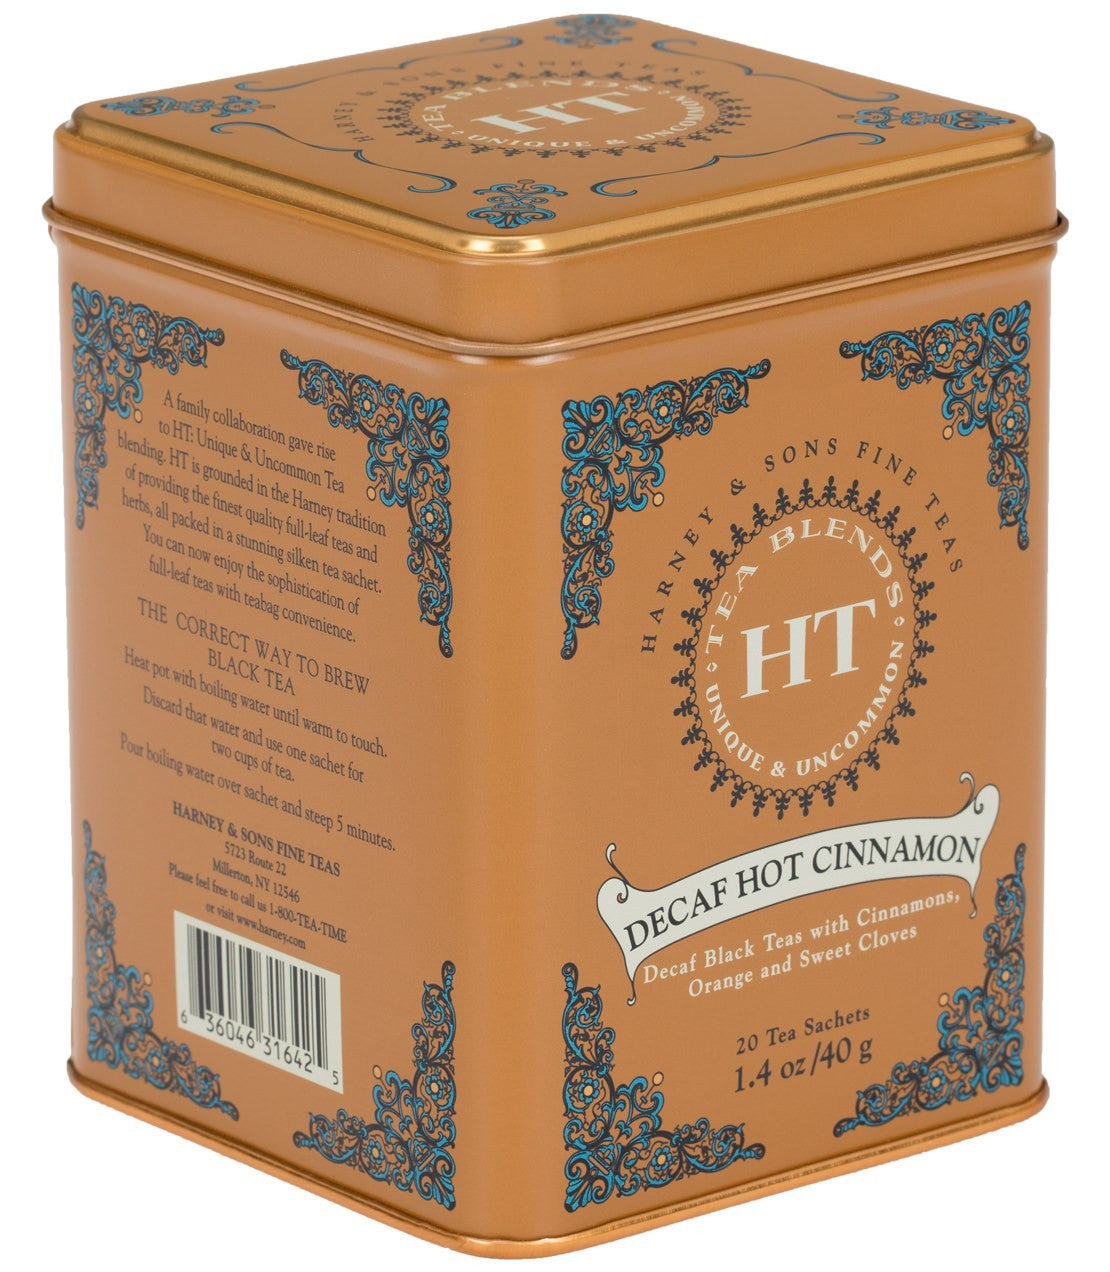 Decaf Hot Cinnamon - Sachets HT Tin of 20 Sachets - Harney & Sons Fine Teas